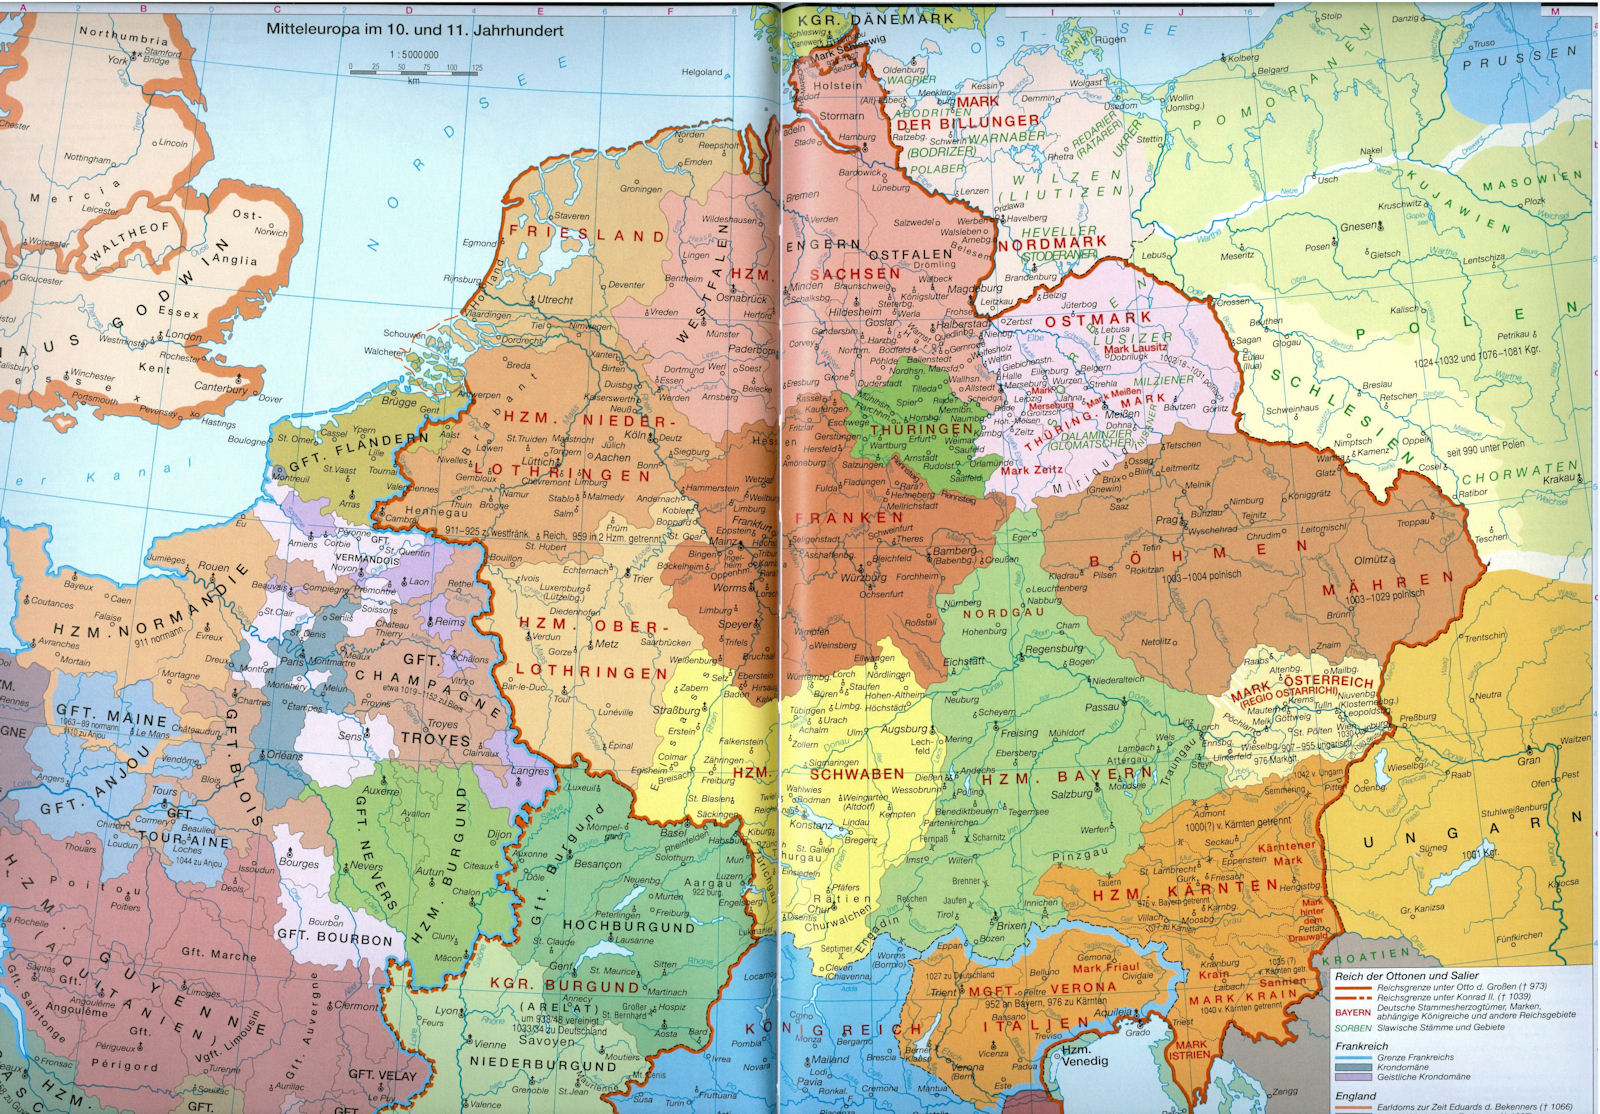 Mitteleuropa im 10. und 11. Jahrhunder